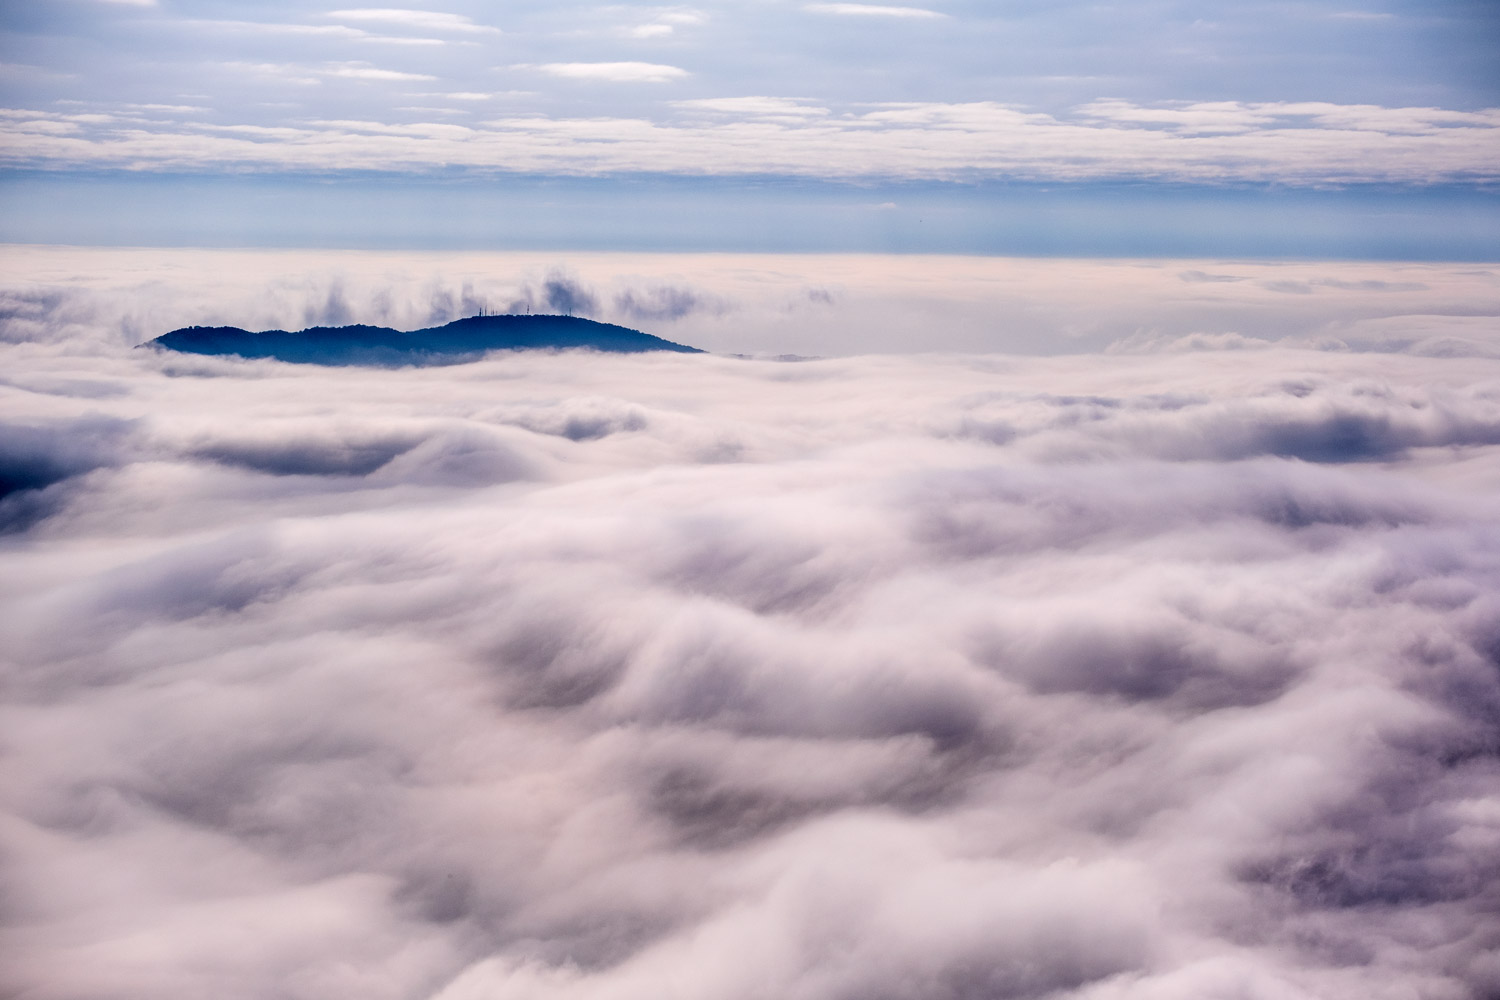 Mare di nuvole con isola sotto il Monte Baldo...